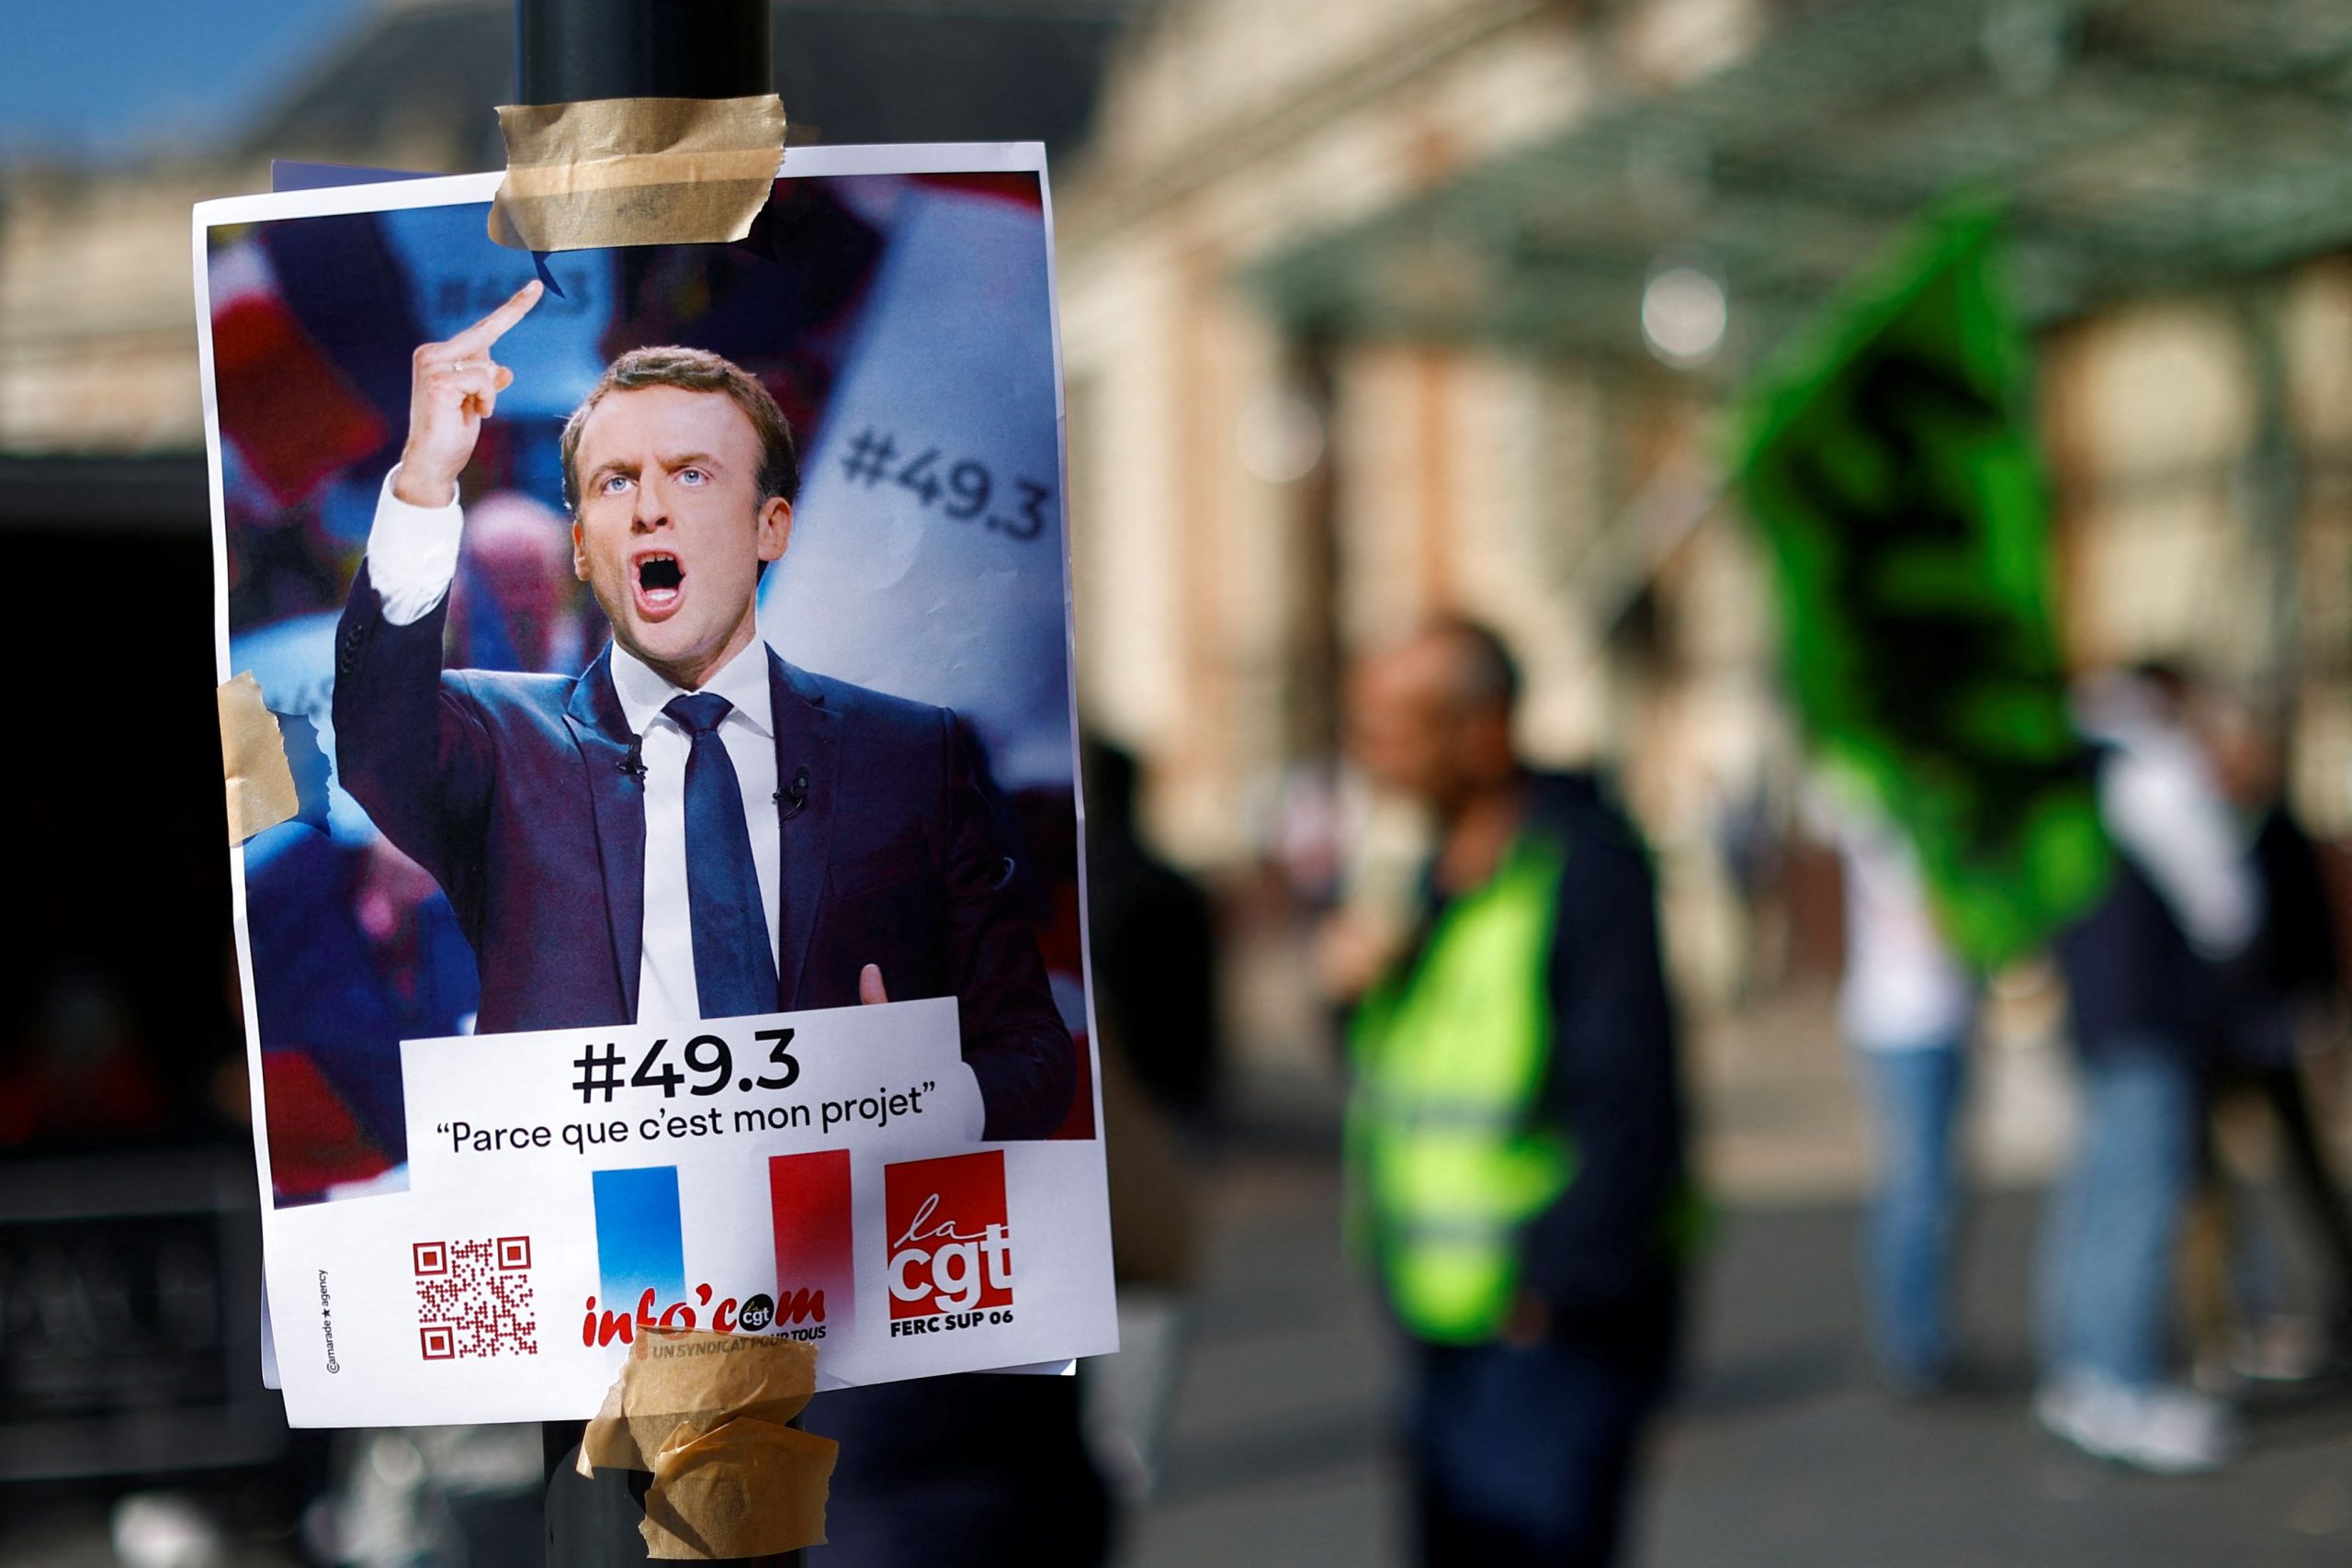 Γαλλία: Πότε αποφασίζει το Συνταγματικό Συμβούλιο για την συνταξιοδοτική μεταρρύθμιση